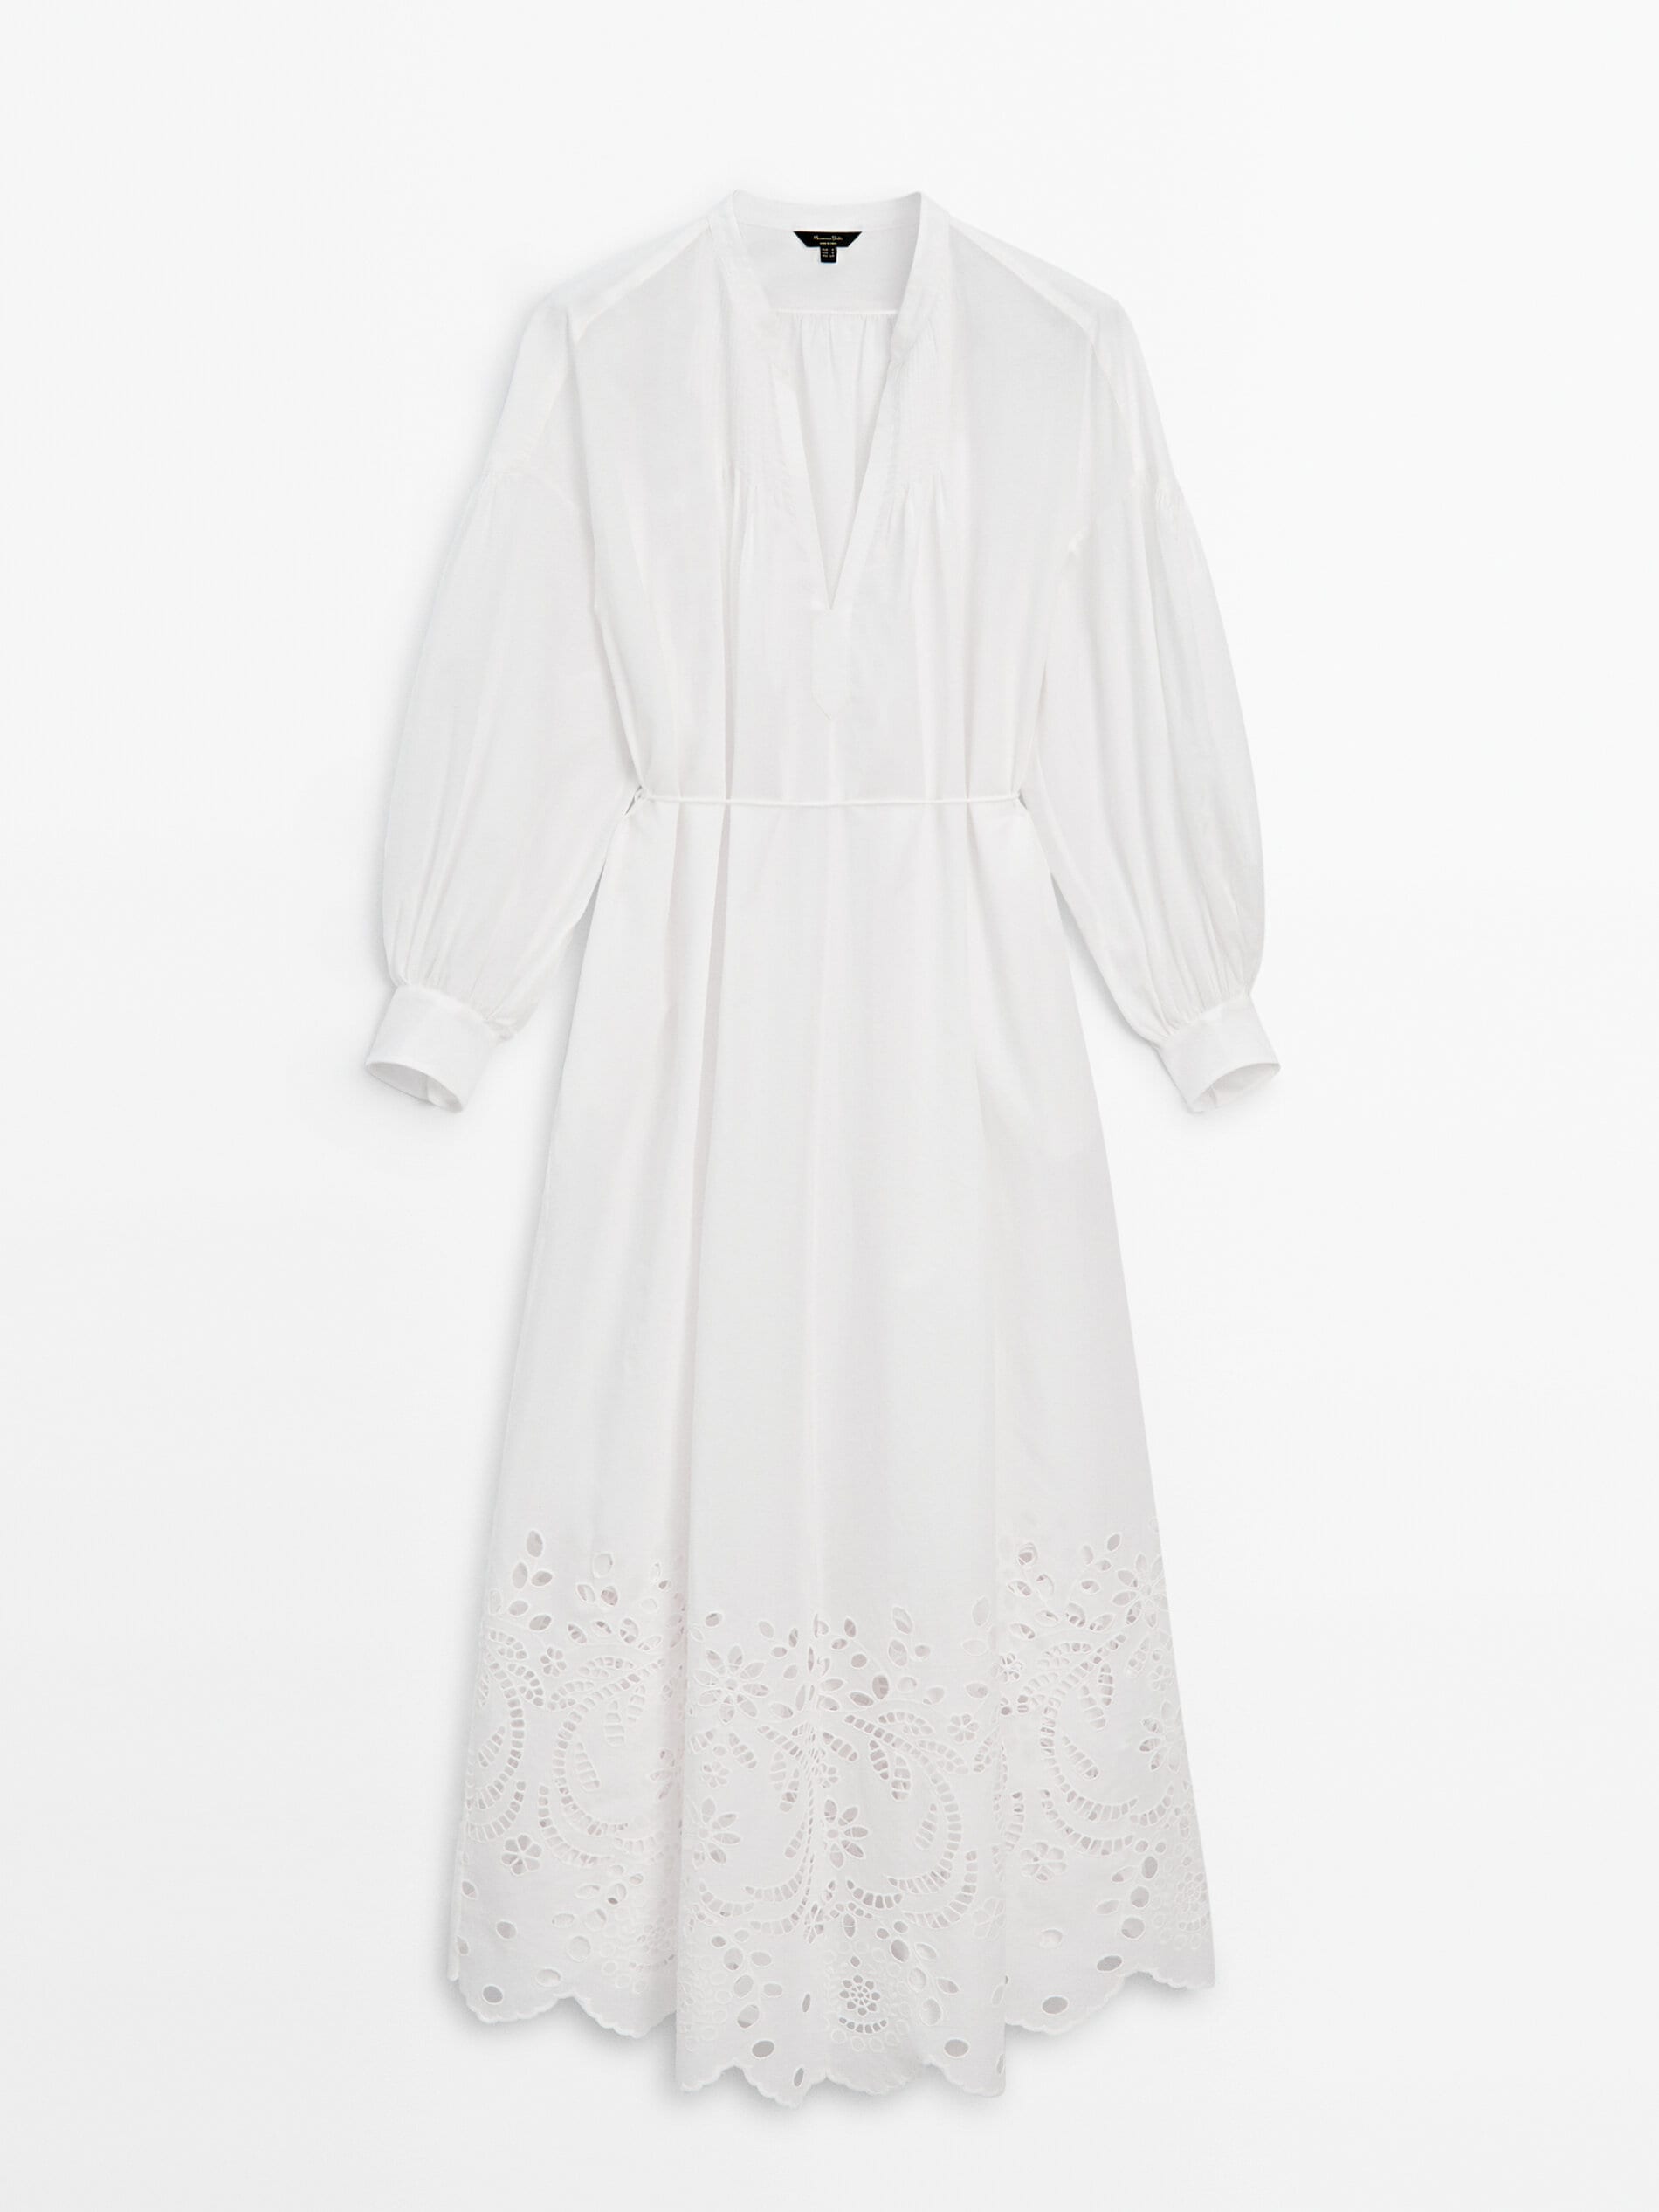 Платье из 100% хлопка с вышивкой. Massimo Dutti, белый